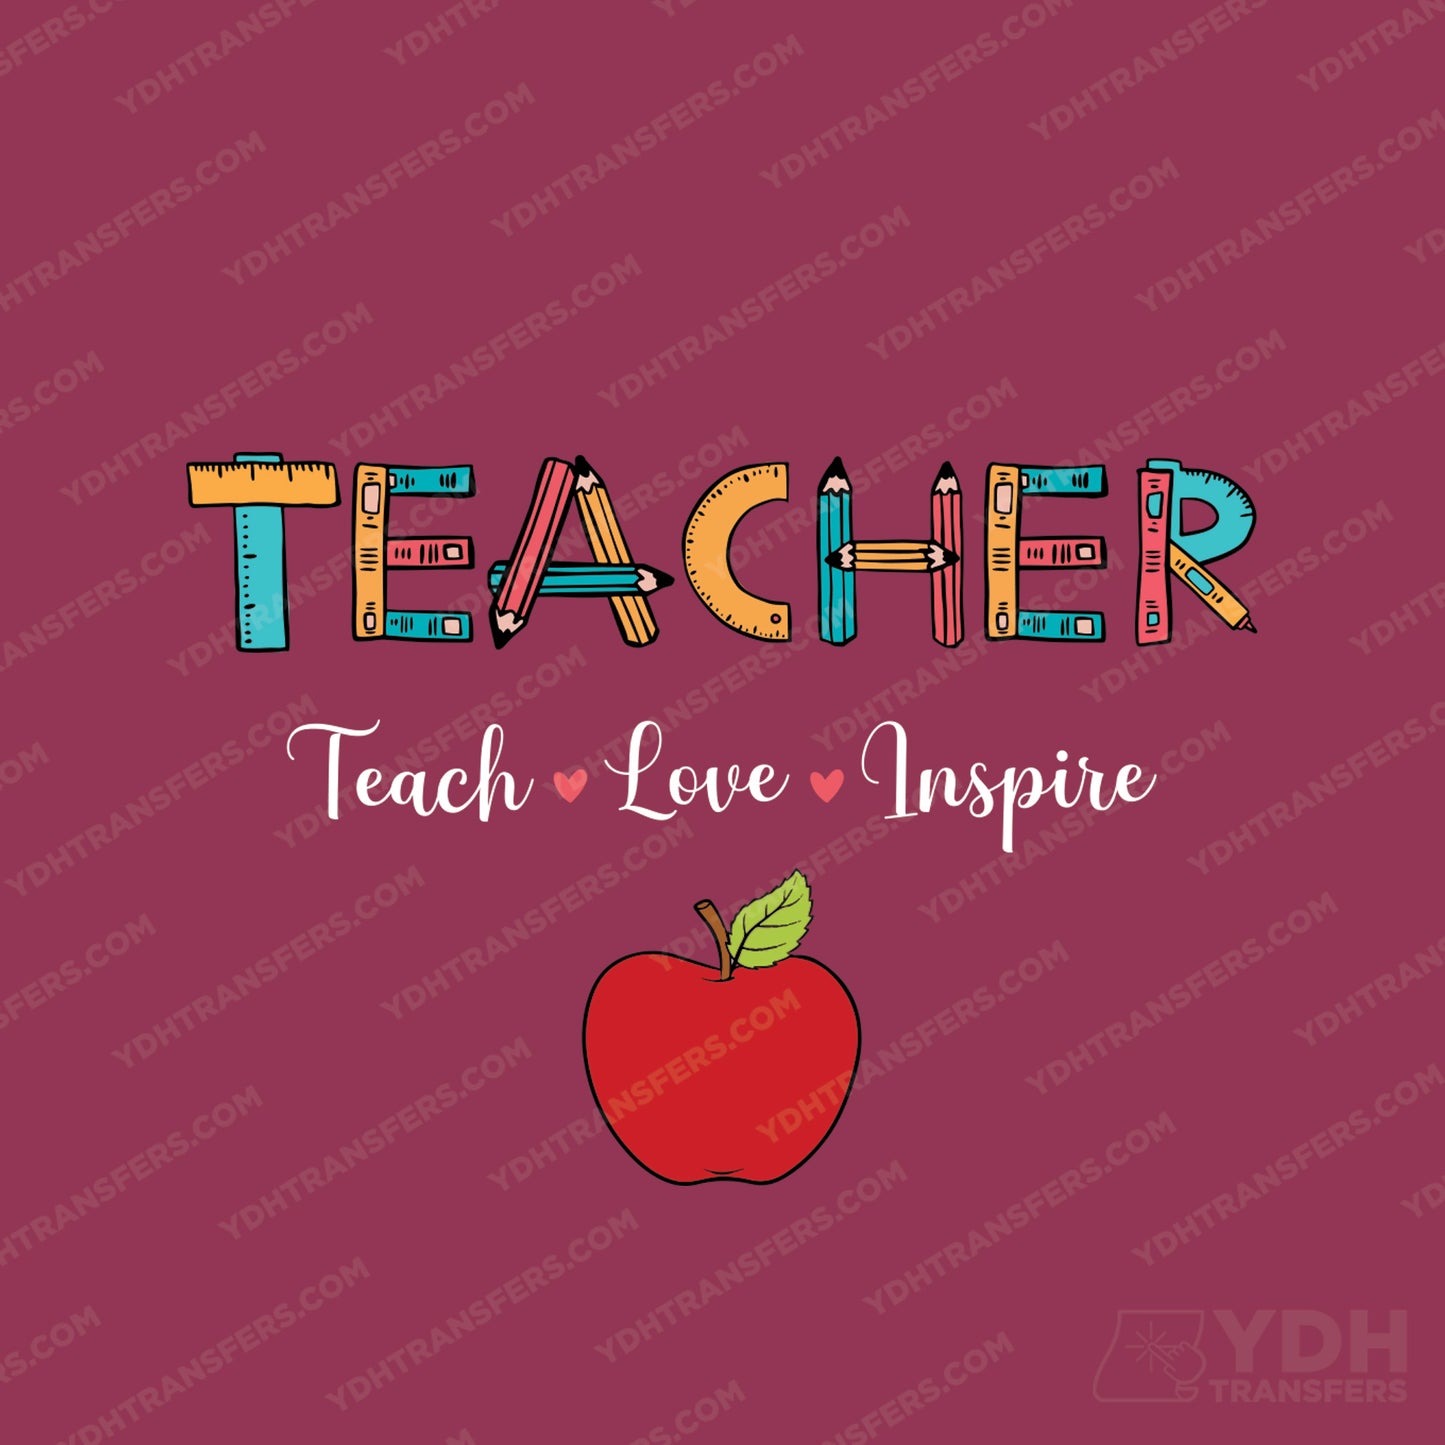 Teacher - Teach, Love, Inspire Full Color Transfer